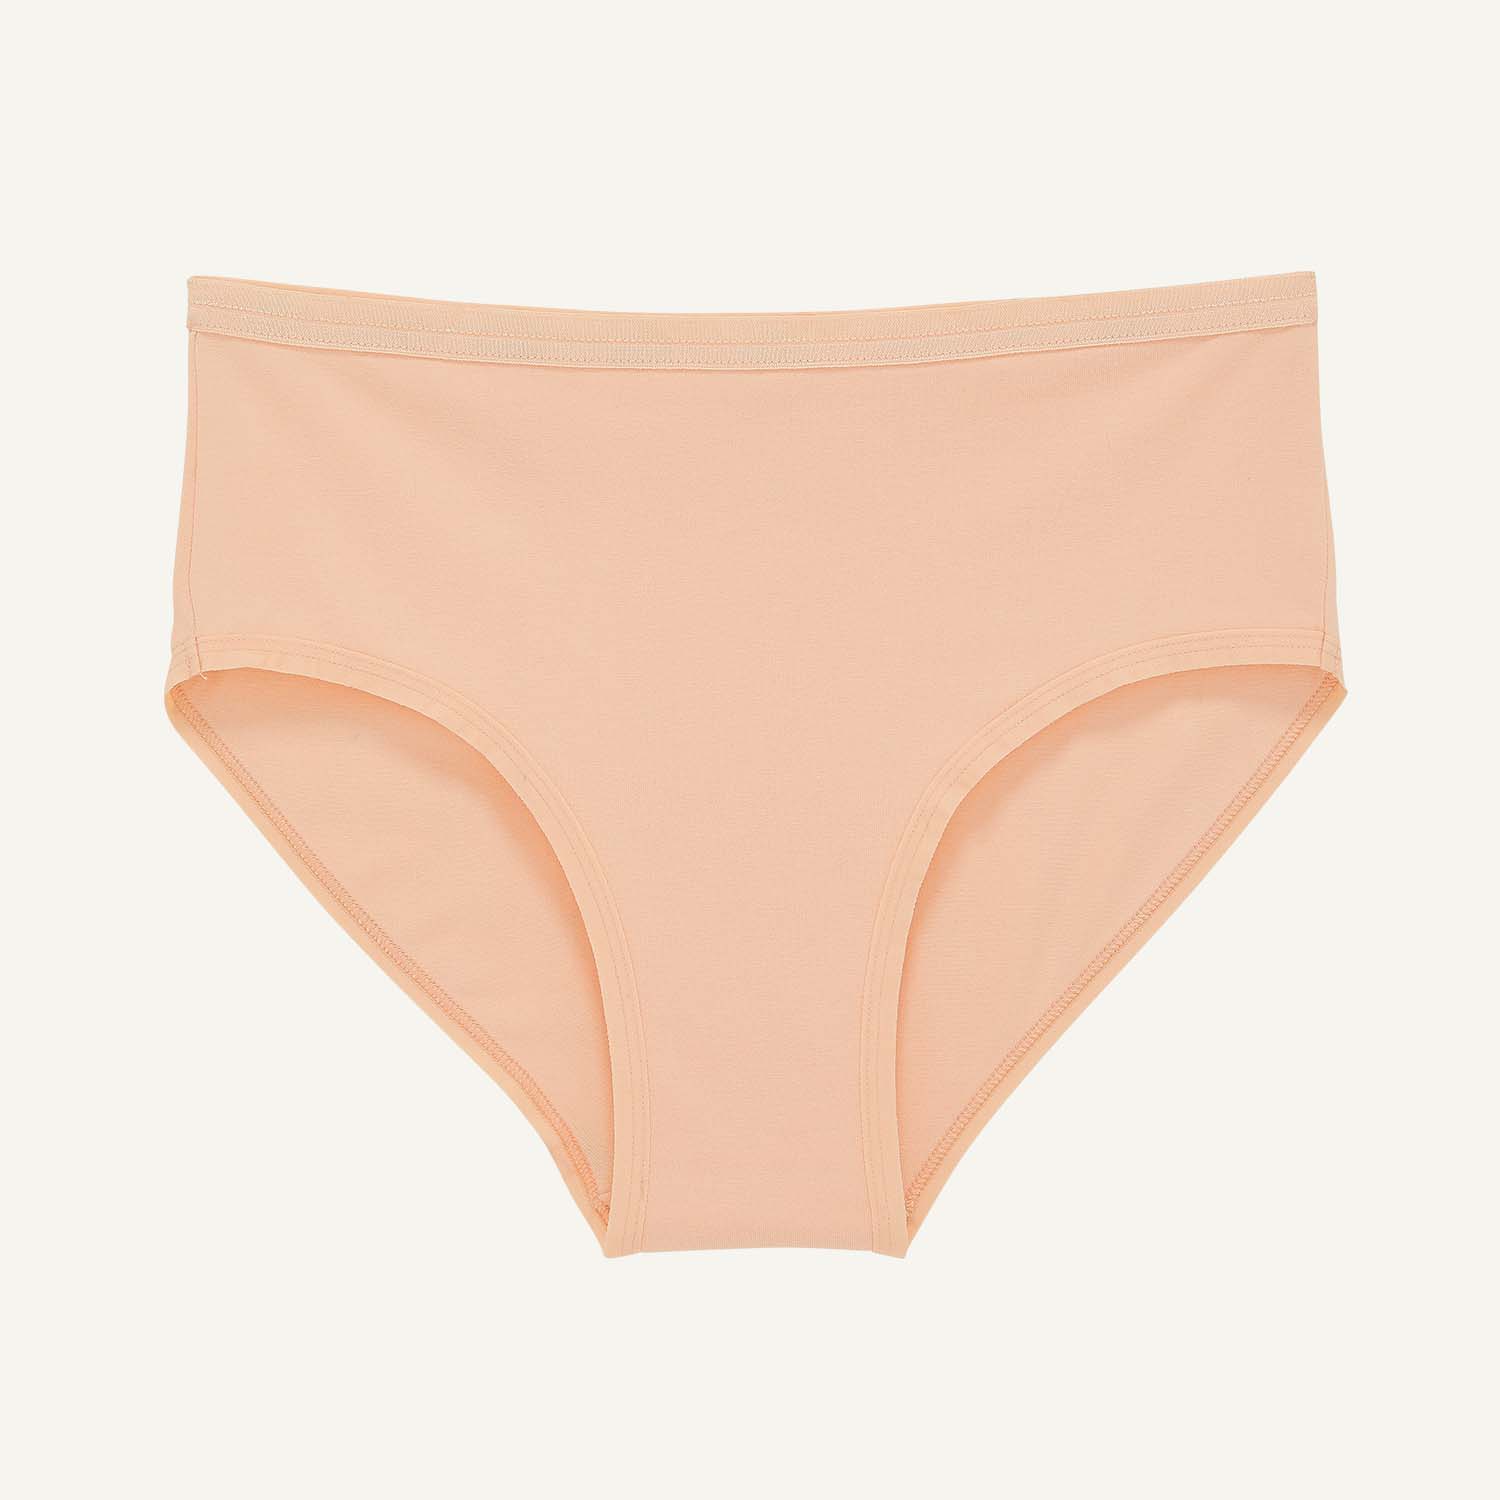 organic cotton underwear nude color